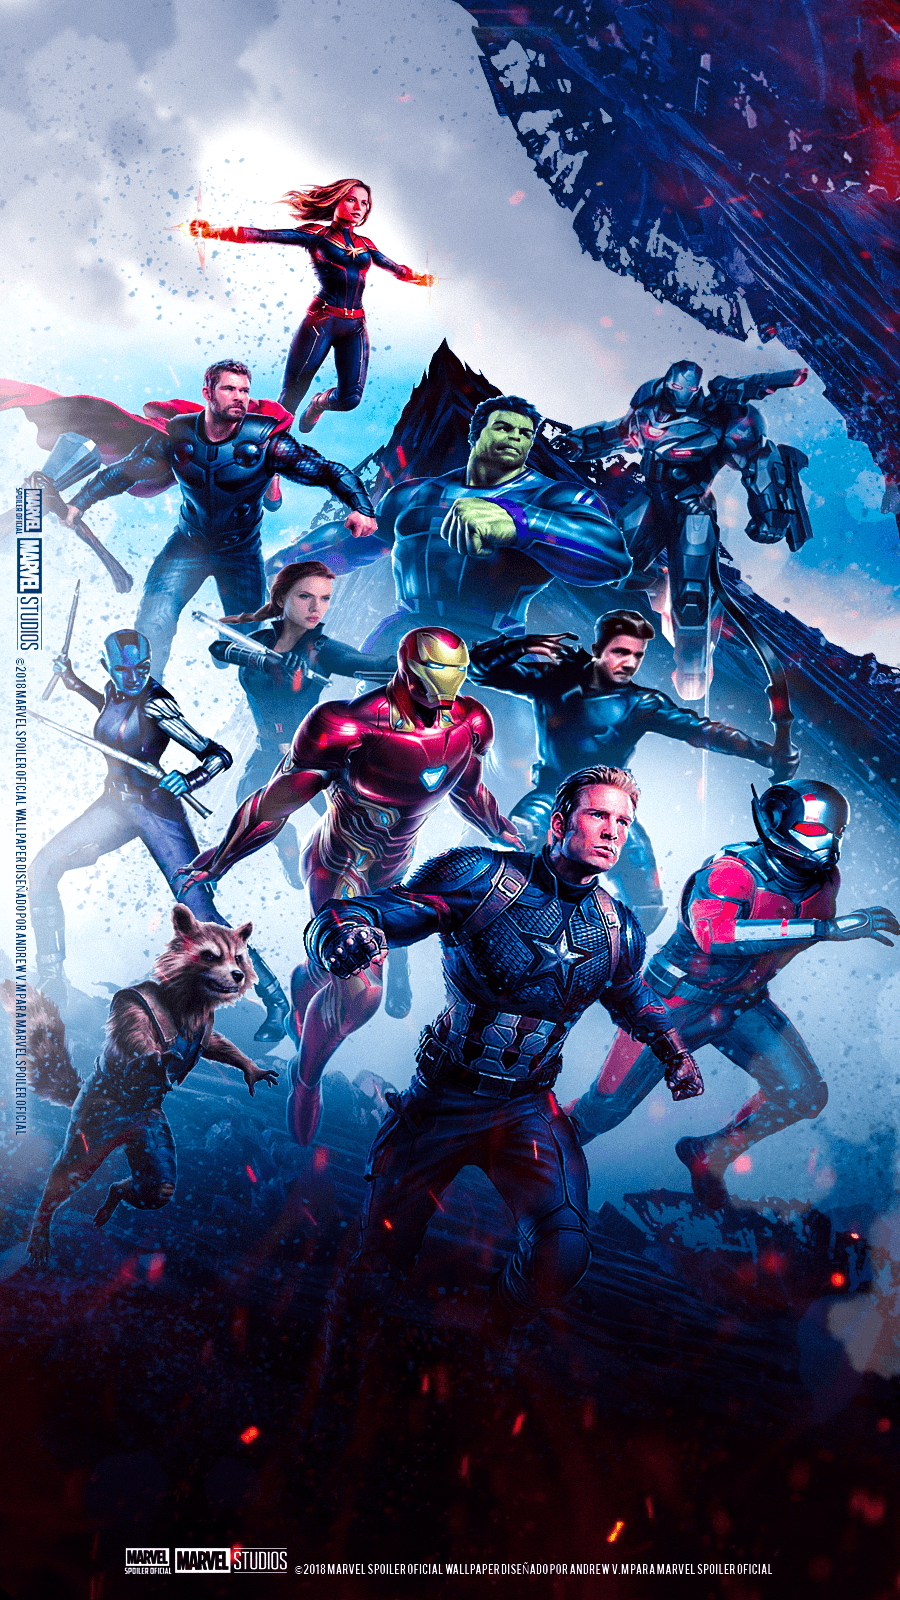 Avengers Endgame Poster Wallpaper. Full Movie 2019